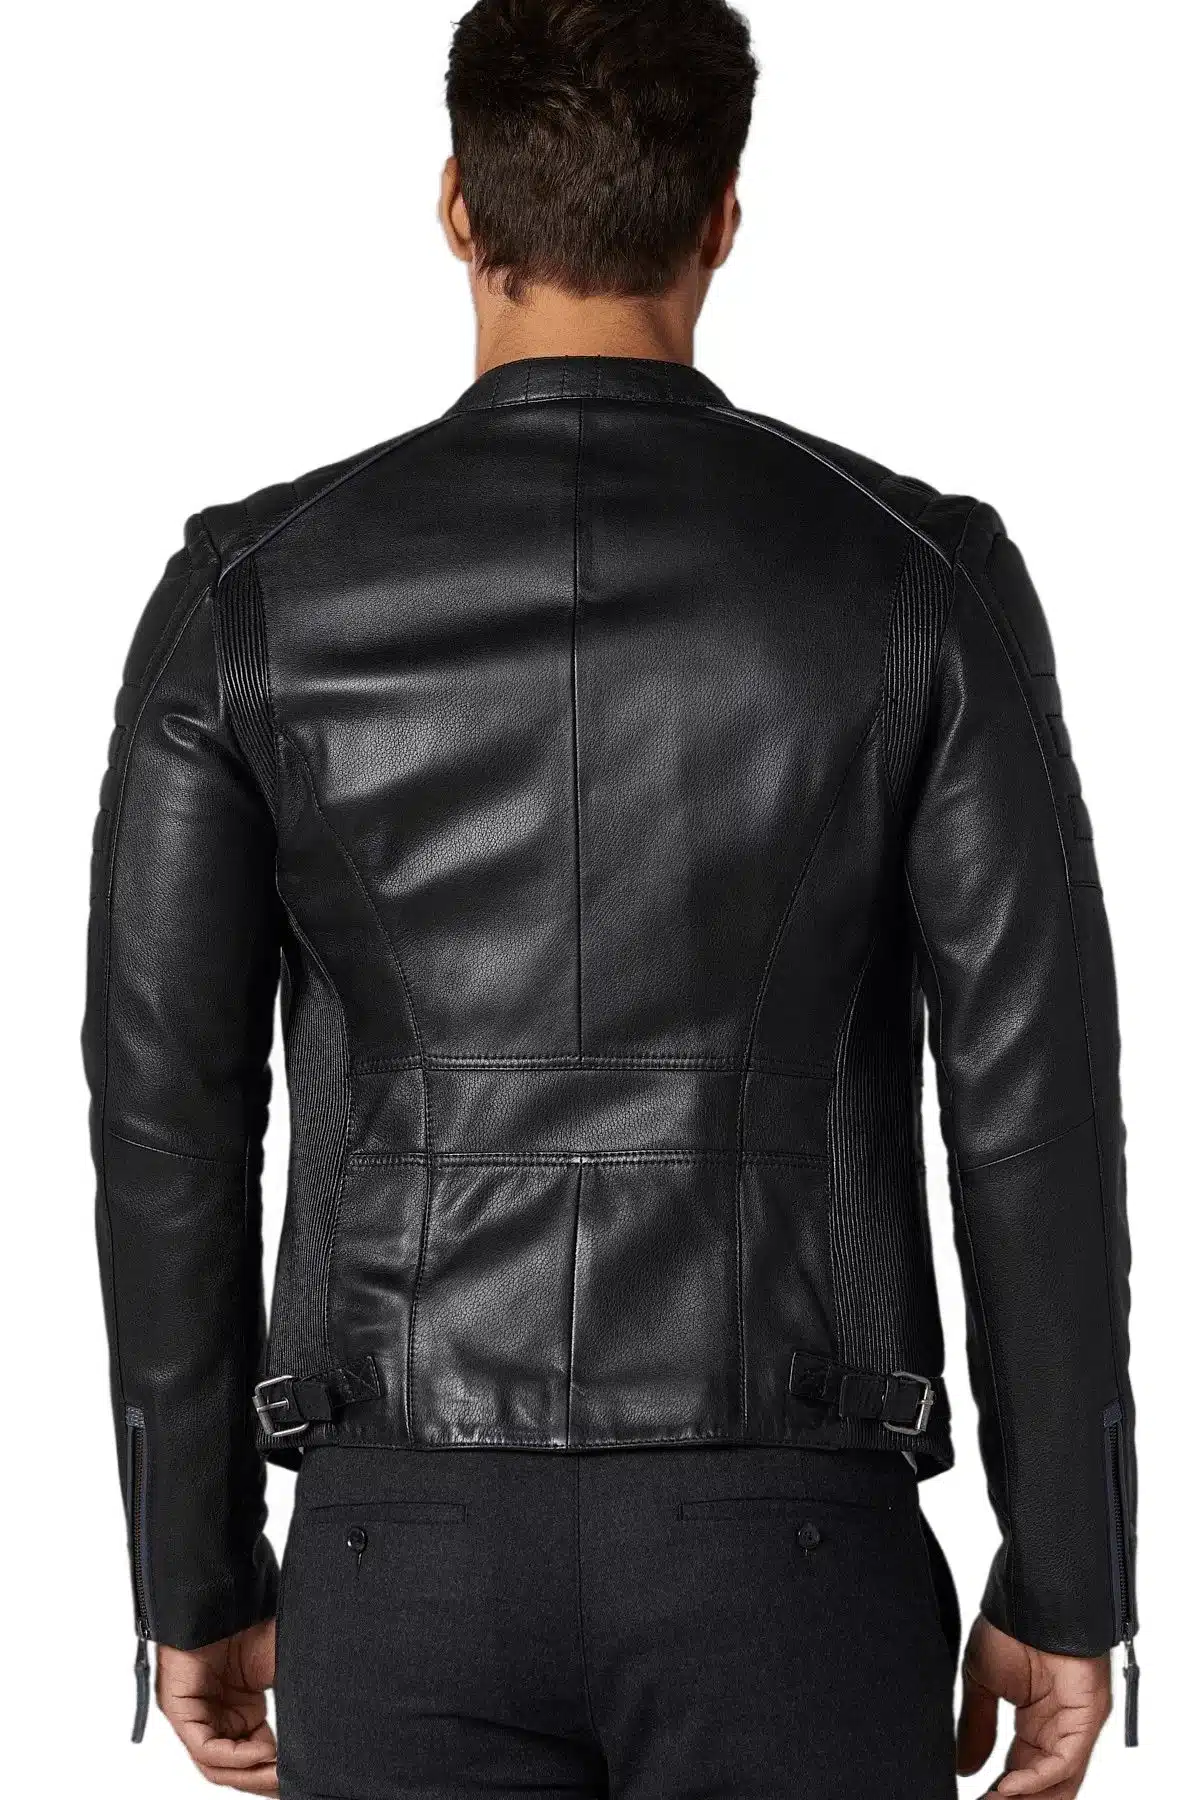 Dazzling Black Men’s Sport Leather Jacket (1)_result